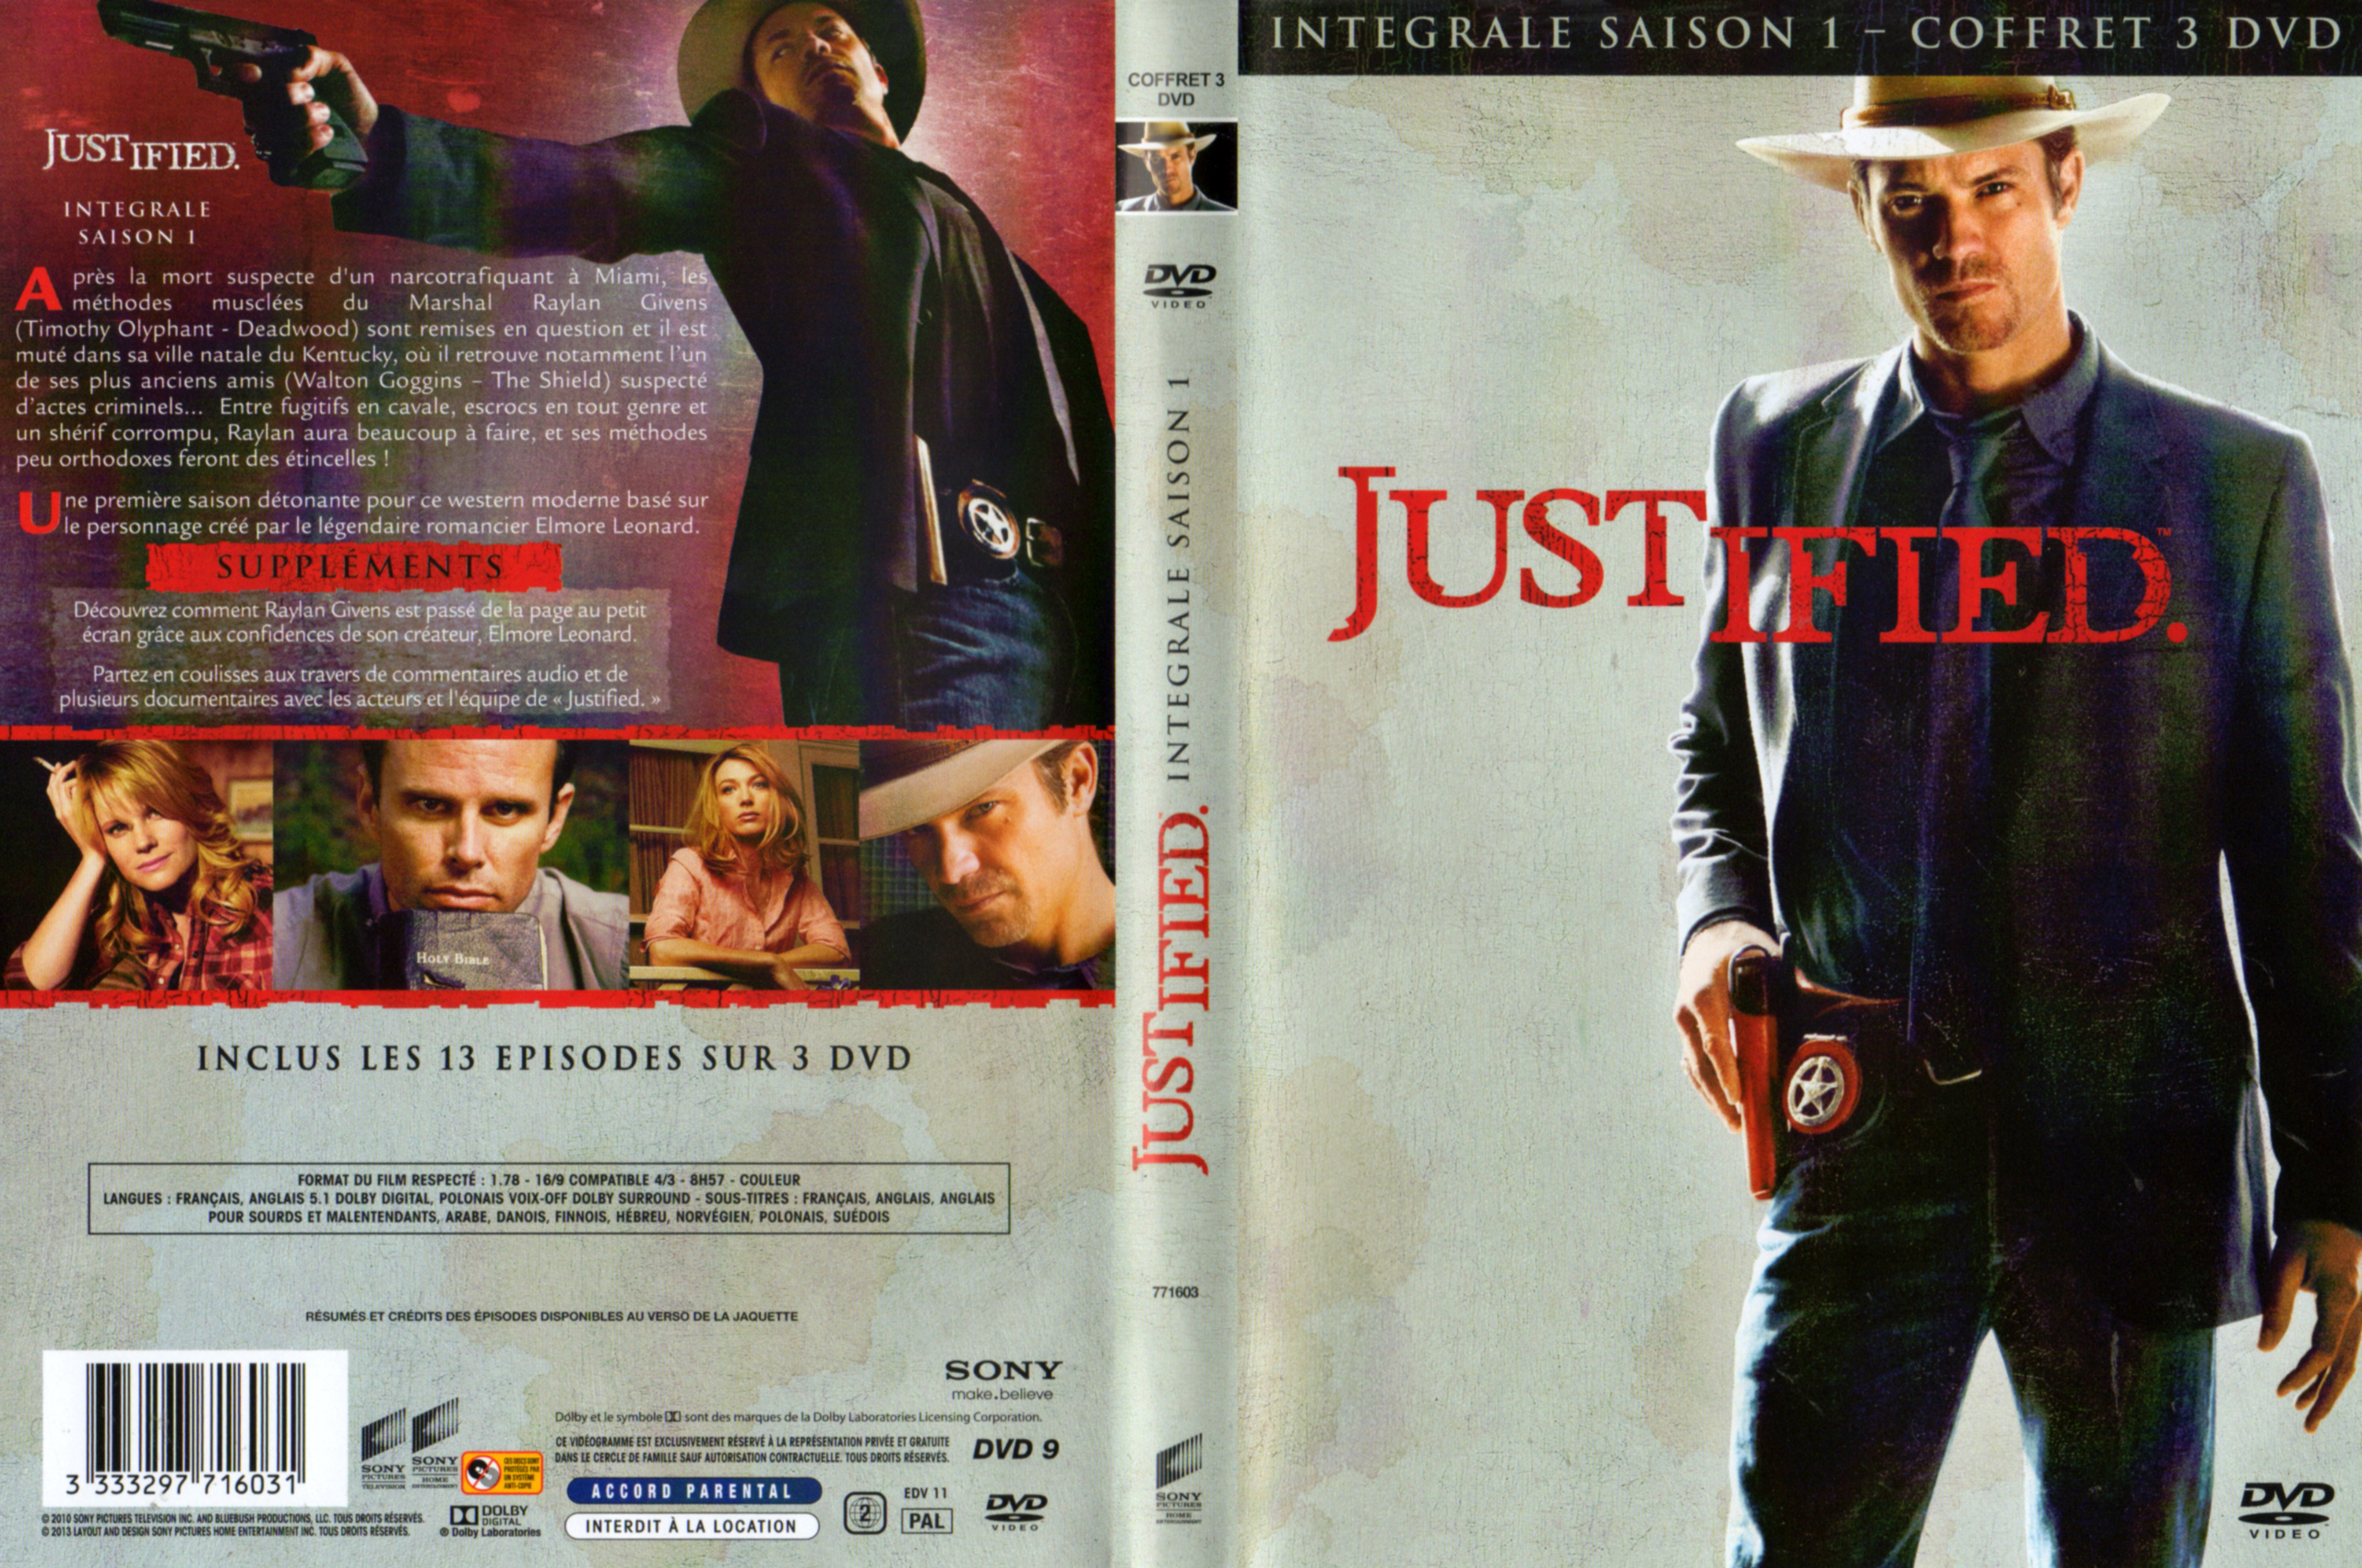 Jaquette DVD Justified Saison 1 COFFRET